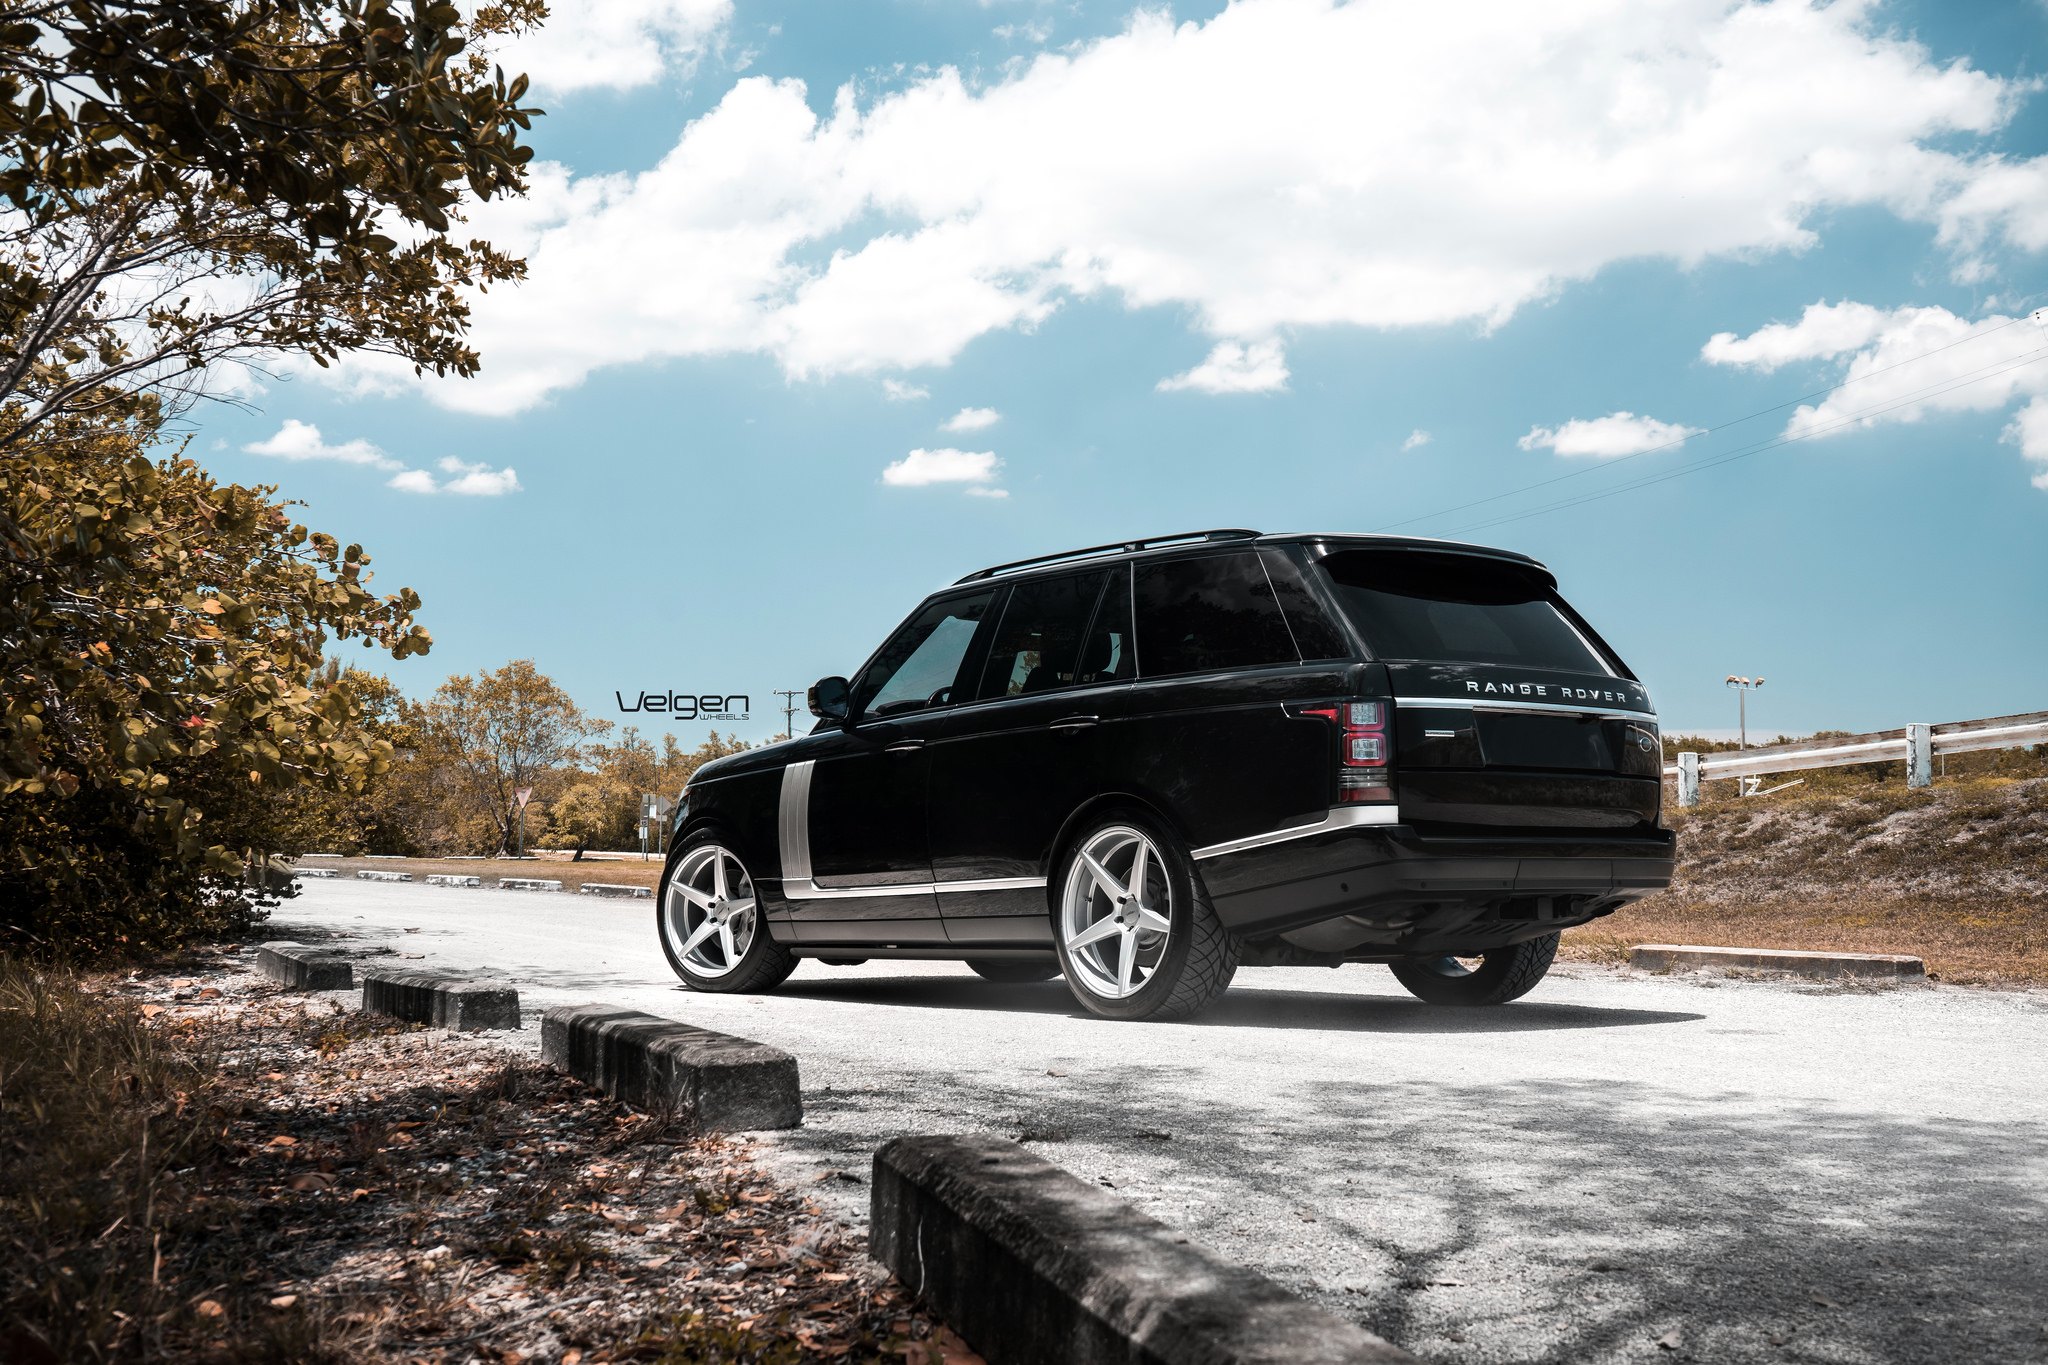 Chrome Velgen Wheels on Black Range Rover - Photo by Velgen